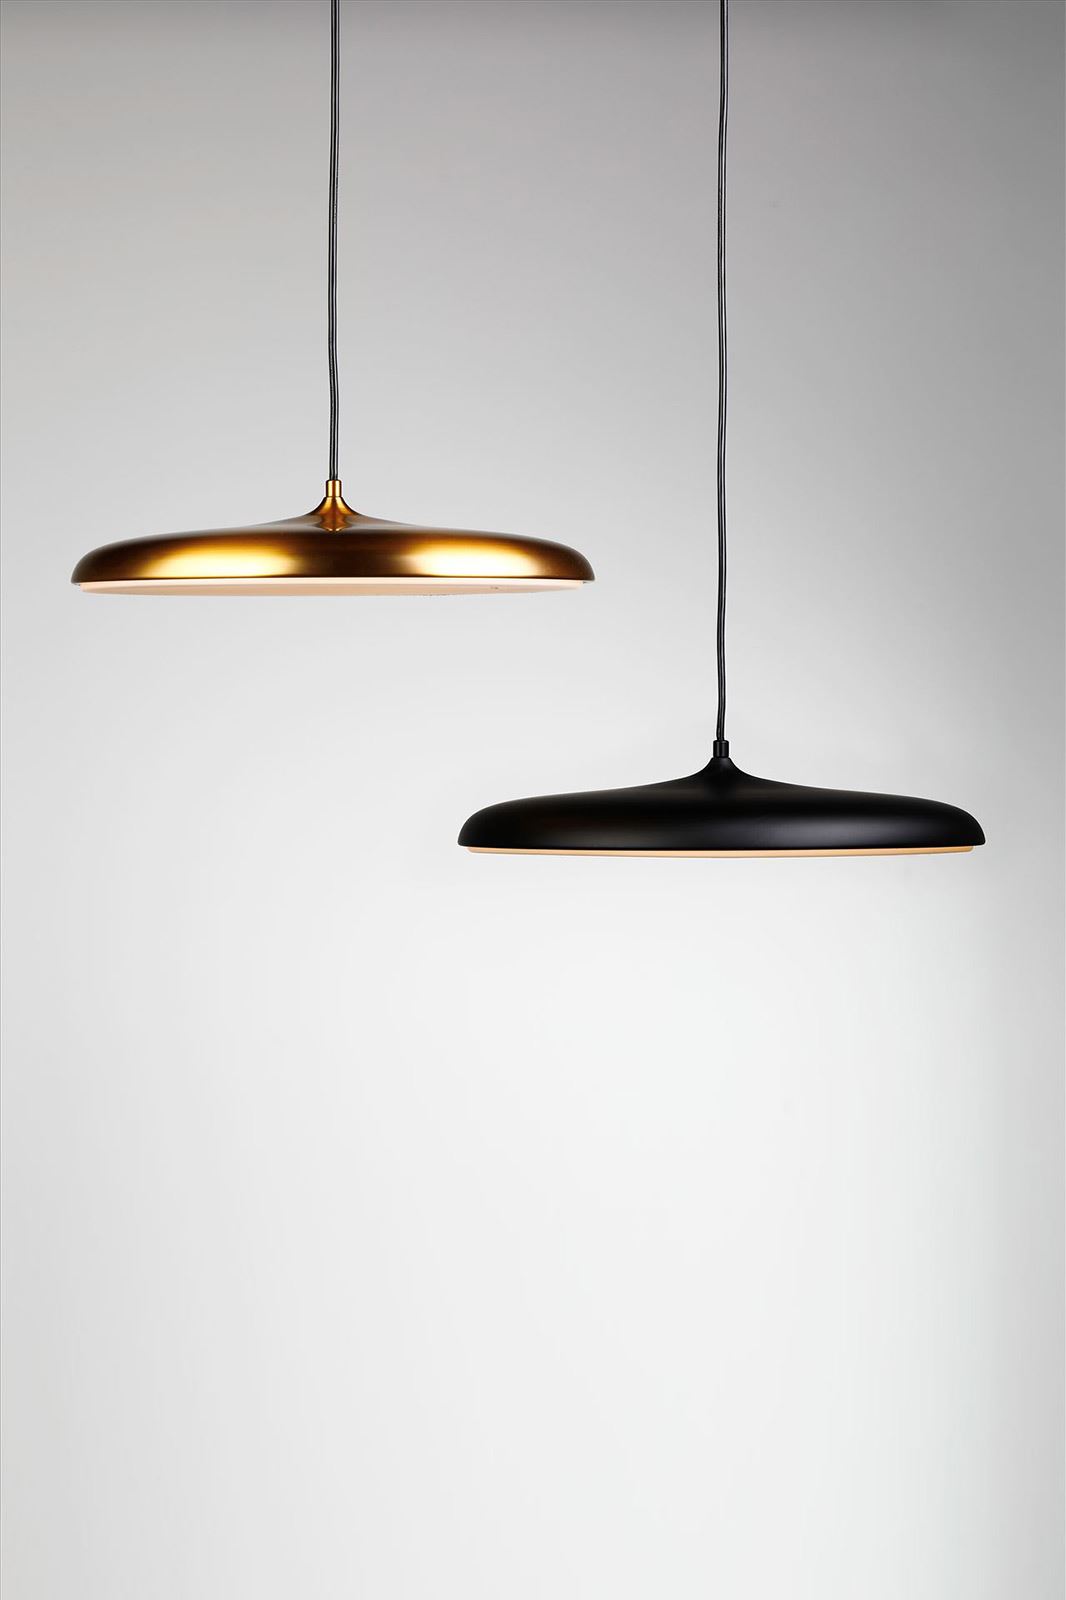 גופי תאורה בקטגוריית מנורות תליה שם המוצר Shavit • Dori Kimhi Lighting 9791